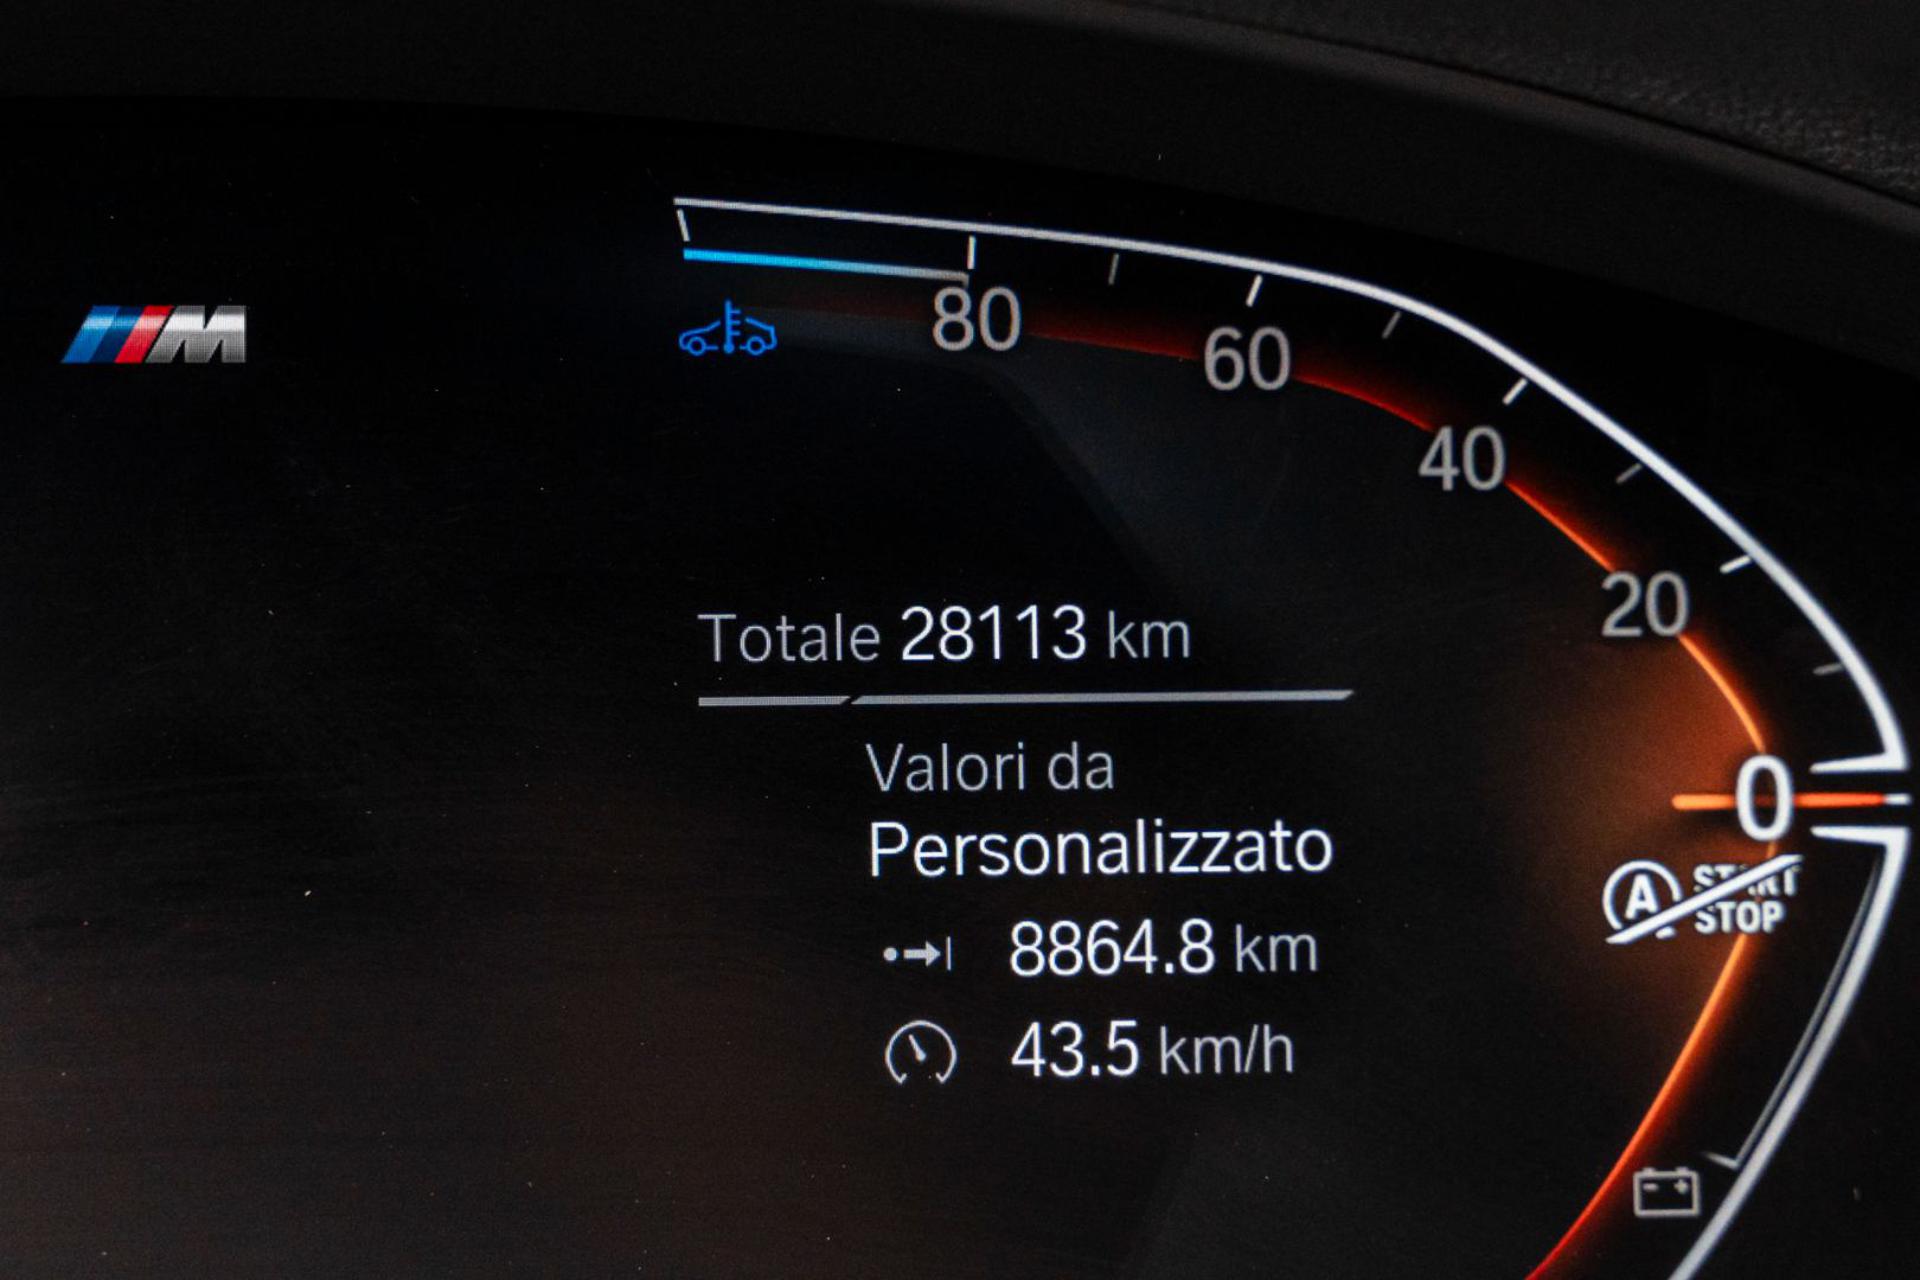 BMW X3 - Concessionaria Gesicar Livorno